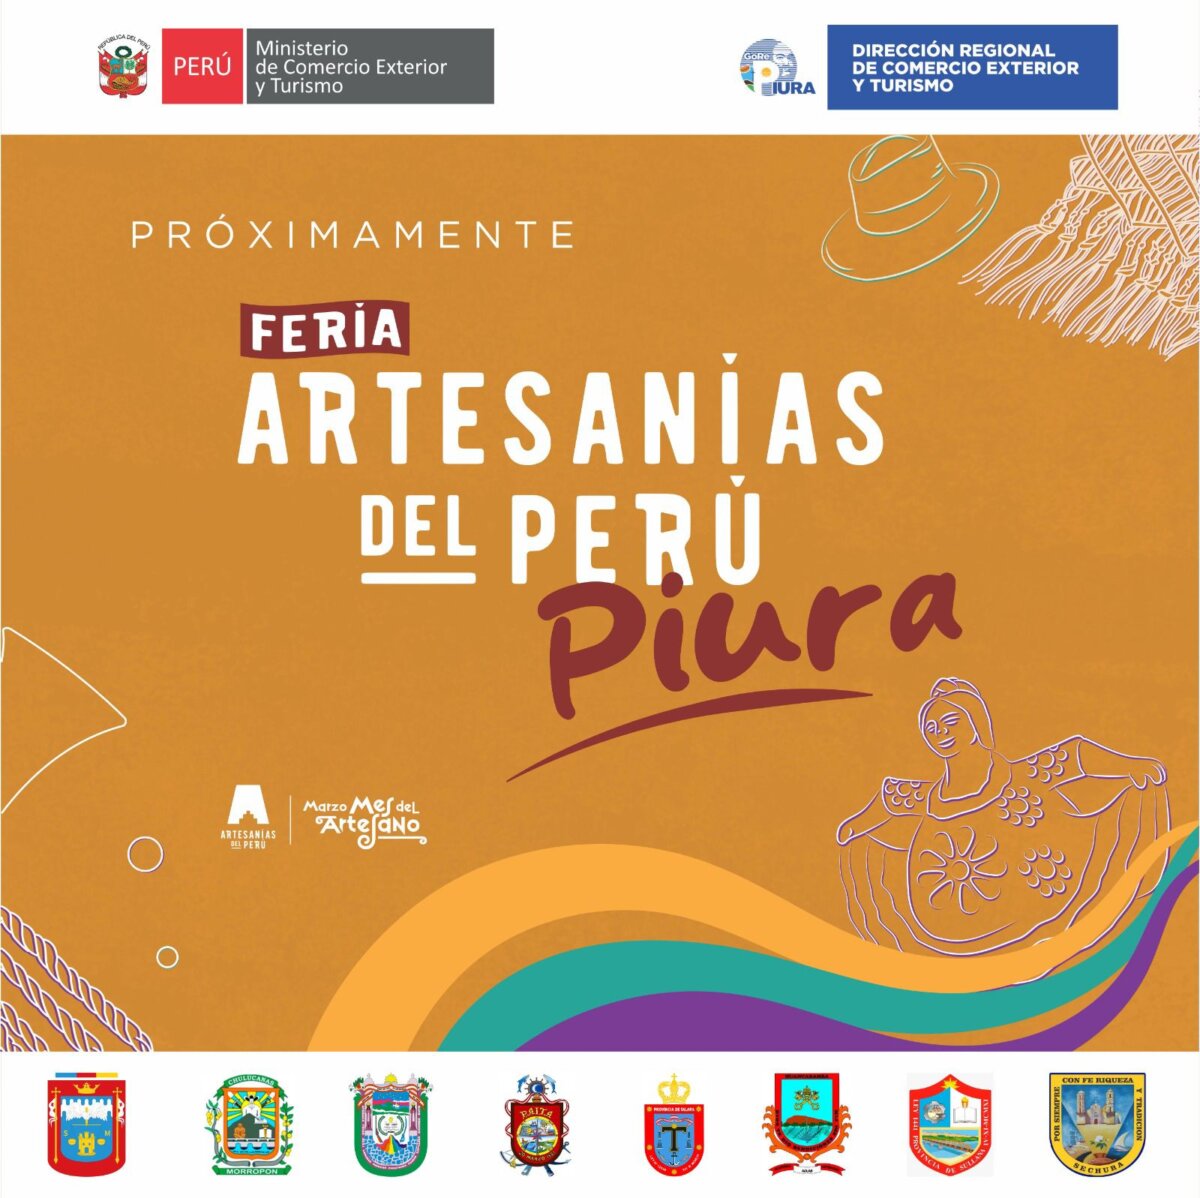 Feria Artesanía del Perú llega a Piura desde este viernes 22 de marzo. FOTO: Mincetur. 